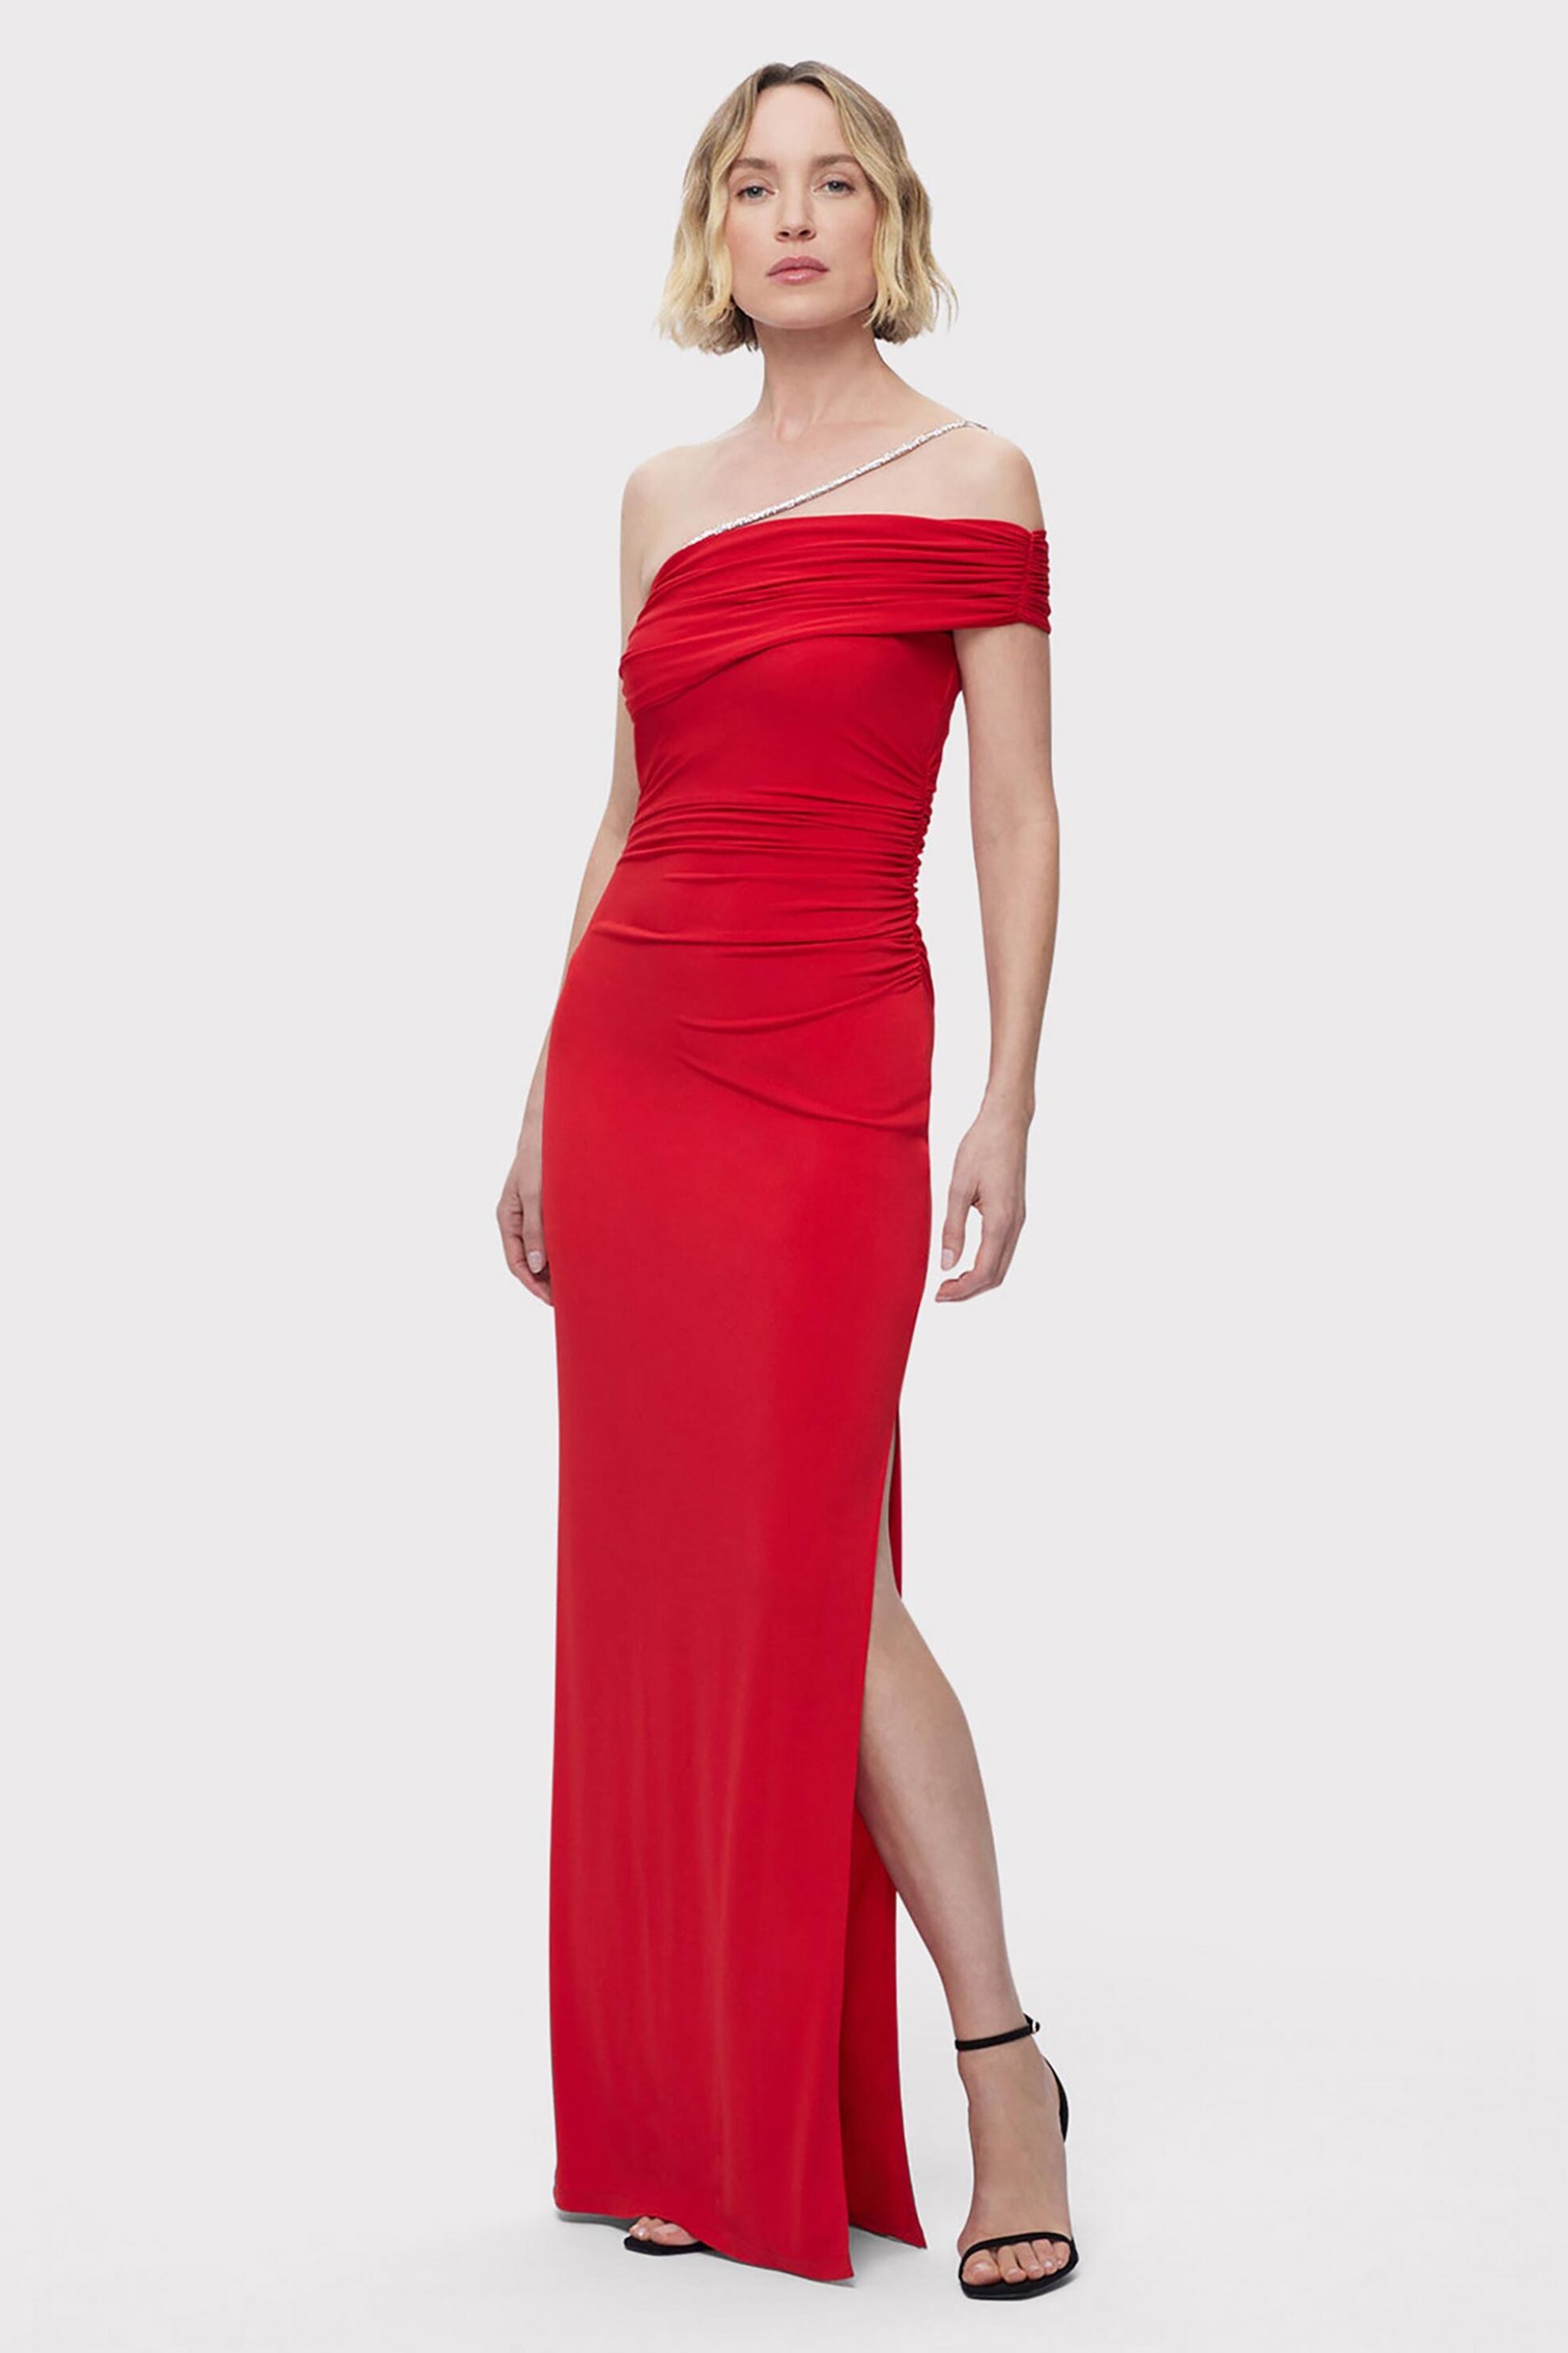 Γυναικεία Ρούχα & Αξεσουάρ > Γυναικεία Ρούχα > Γυναικεία Φορέματα > Γυναικεία Φορέματα Maxi Herve Leger γυναικείο maxi φόρεμα με έναν ώμο "The Olivia Gown" - RMC8467429 Κόκκινο